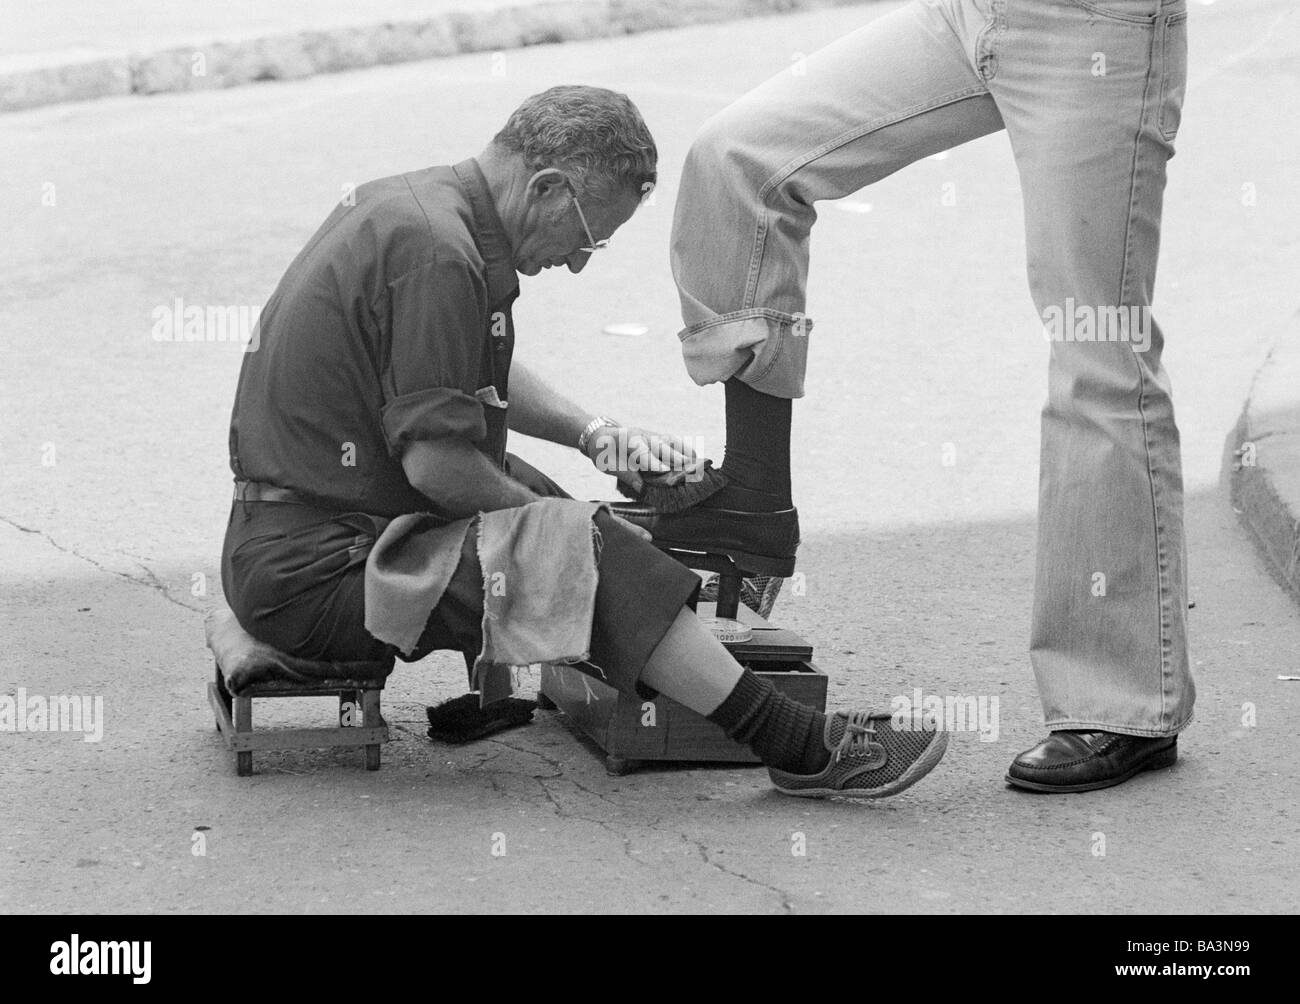 Negli anni settanta, foto in bianco e nero, persone, business shoeblack siede su un taboret la lucidatura delle scarpe, di età compresa tra i 50 e i 60 anni, Spagna, Valencia Foto Stock